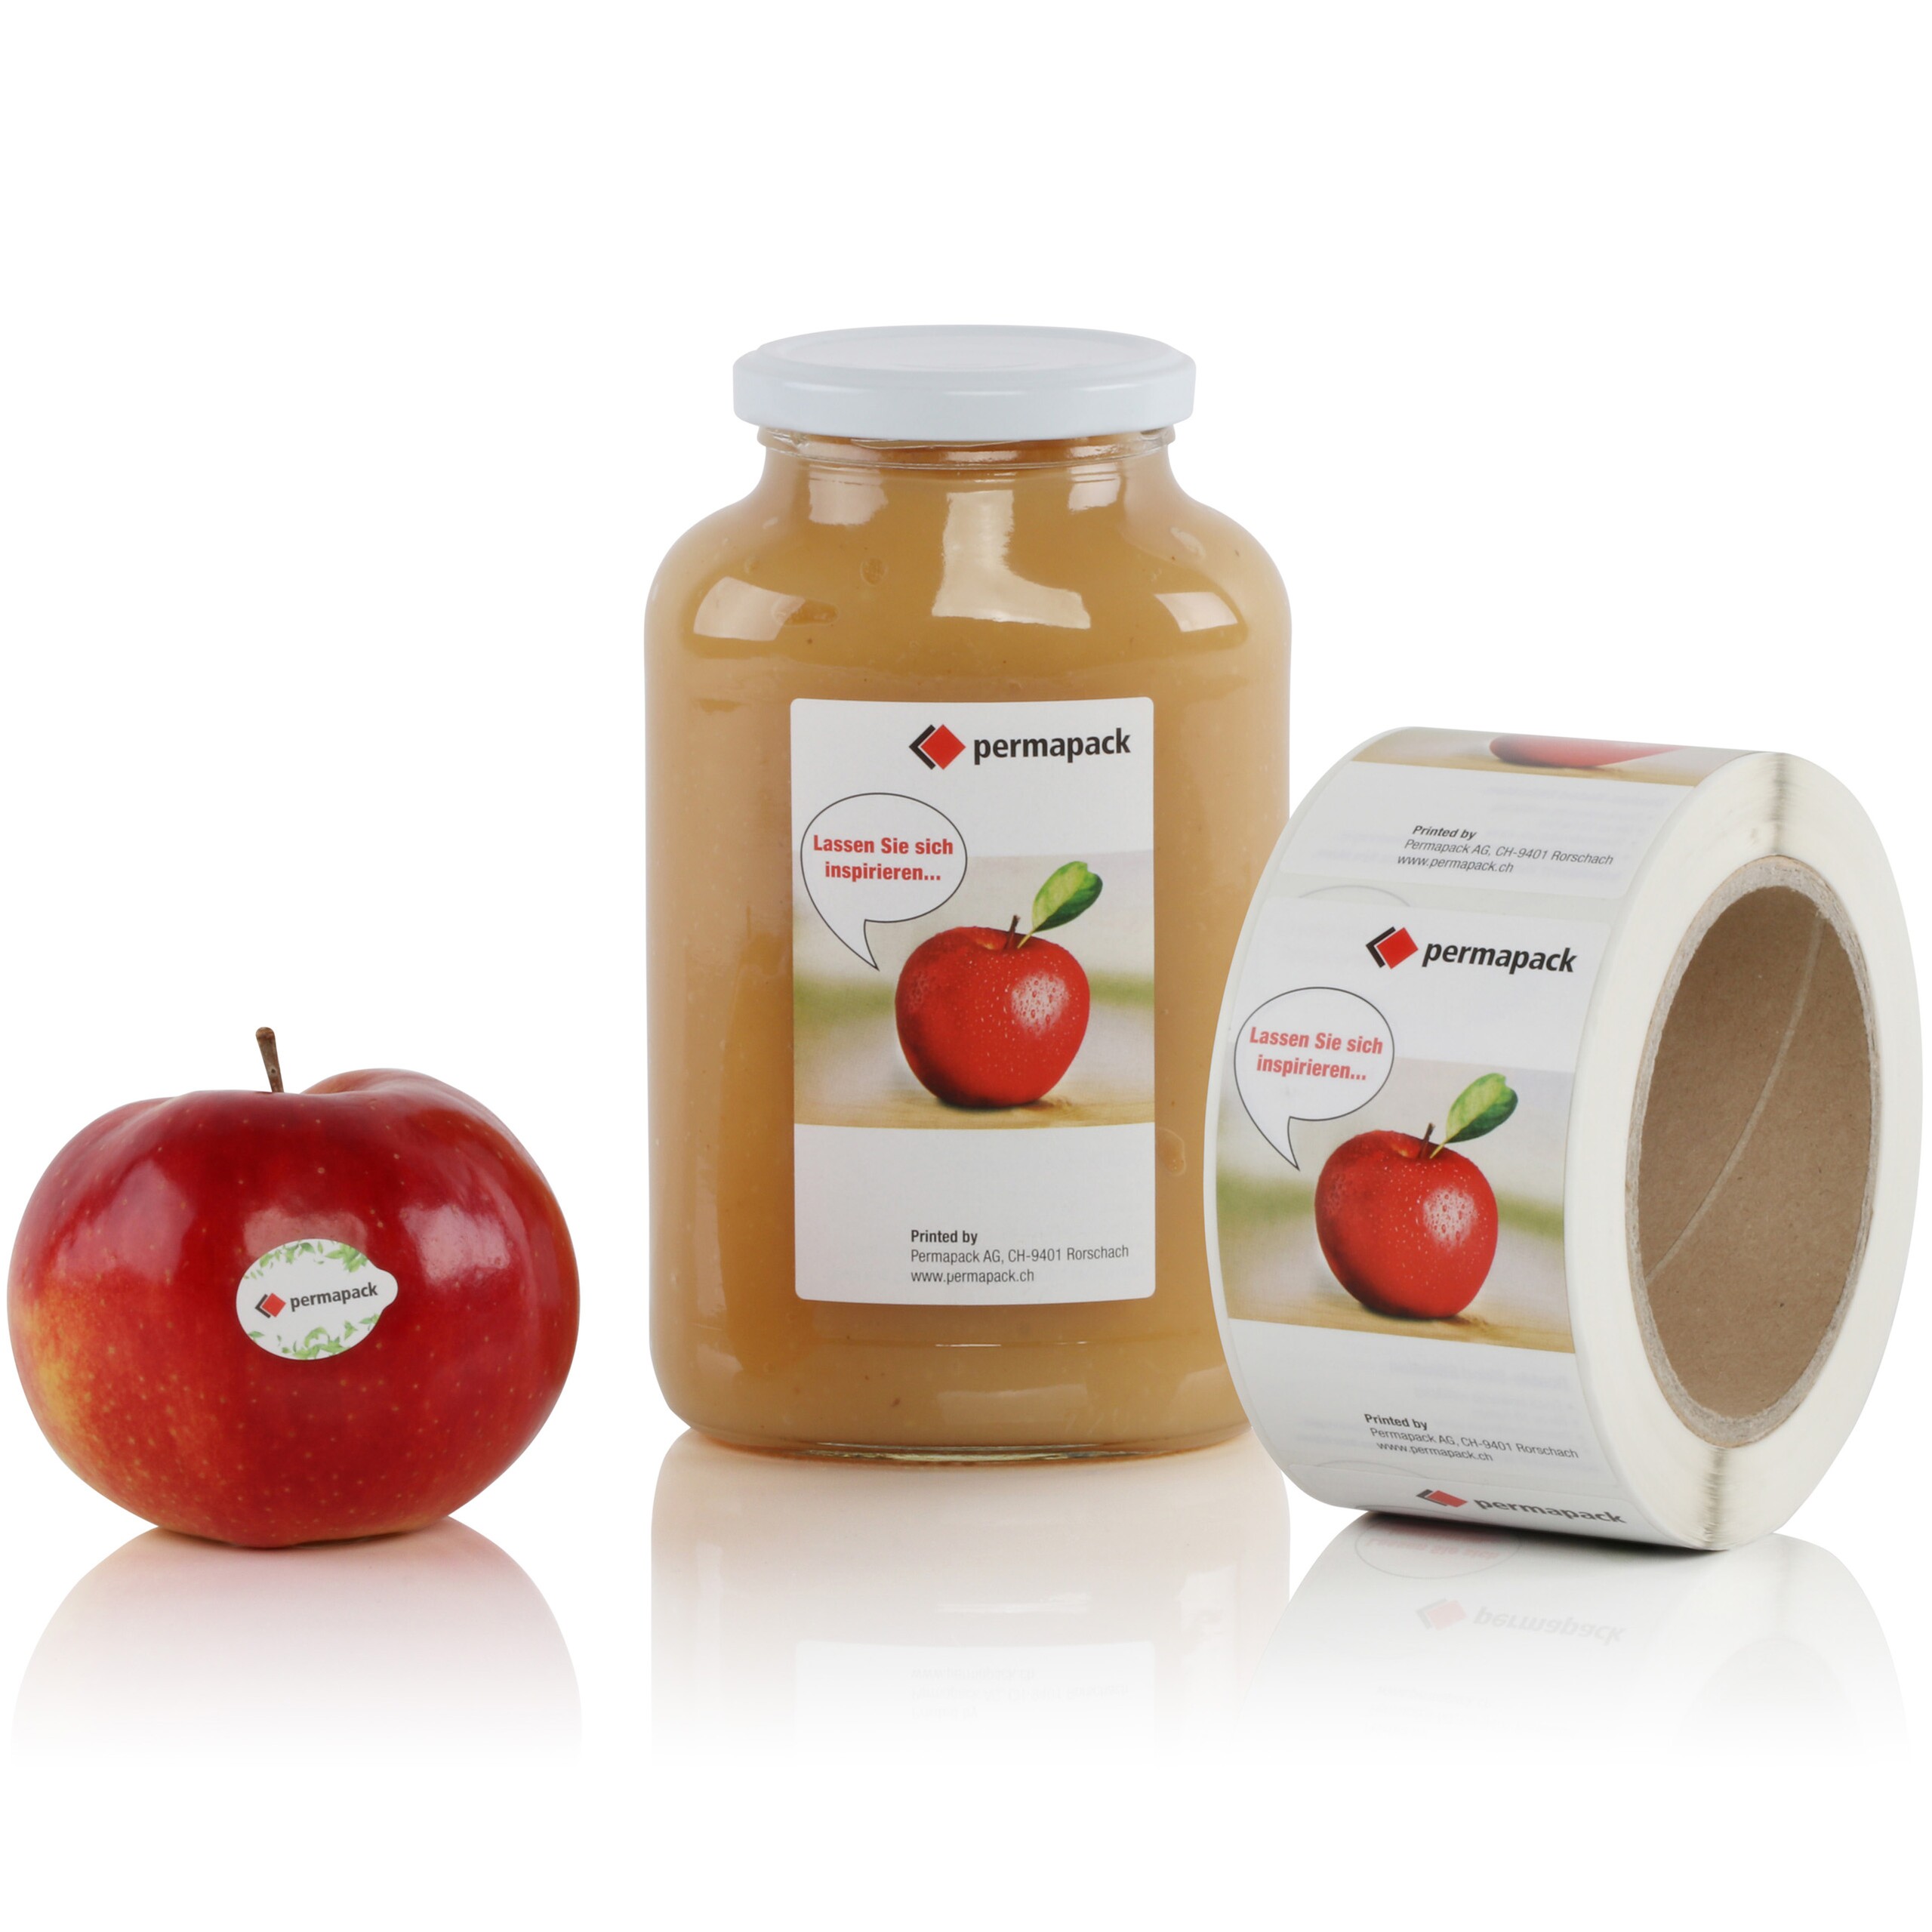 Etiquettes décoratives imprimées sur une pomme, un bocal de compote de pommes et sur un rouleau.